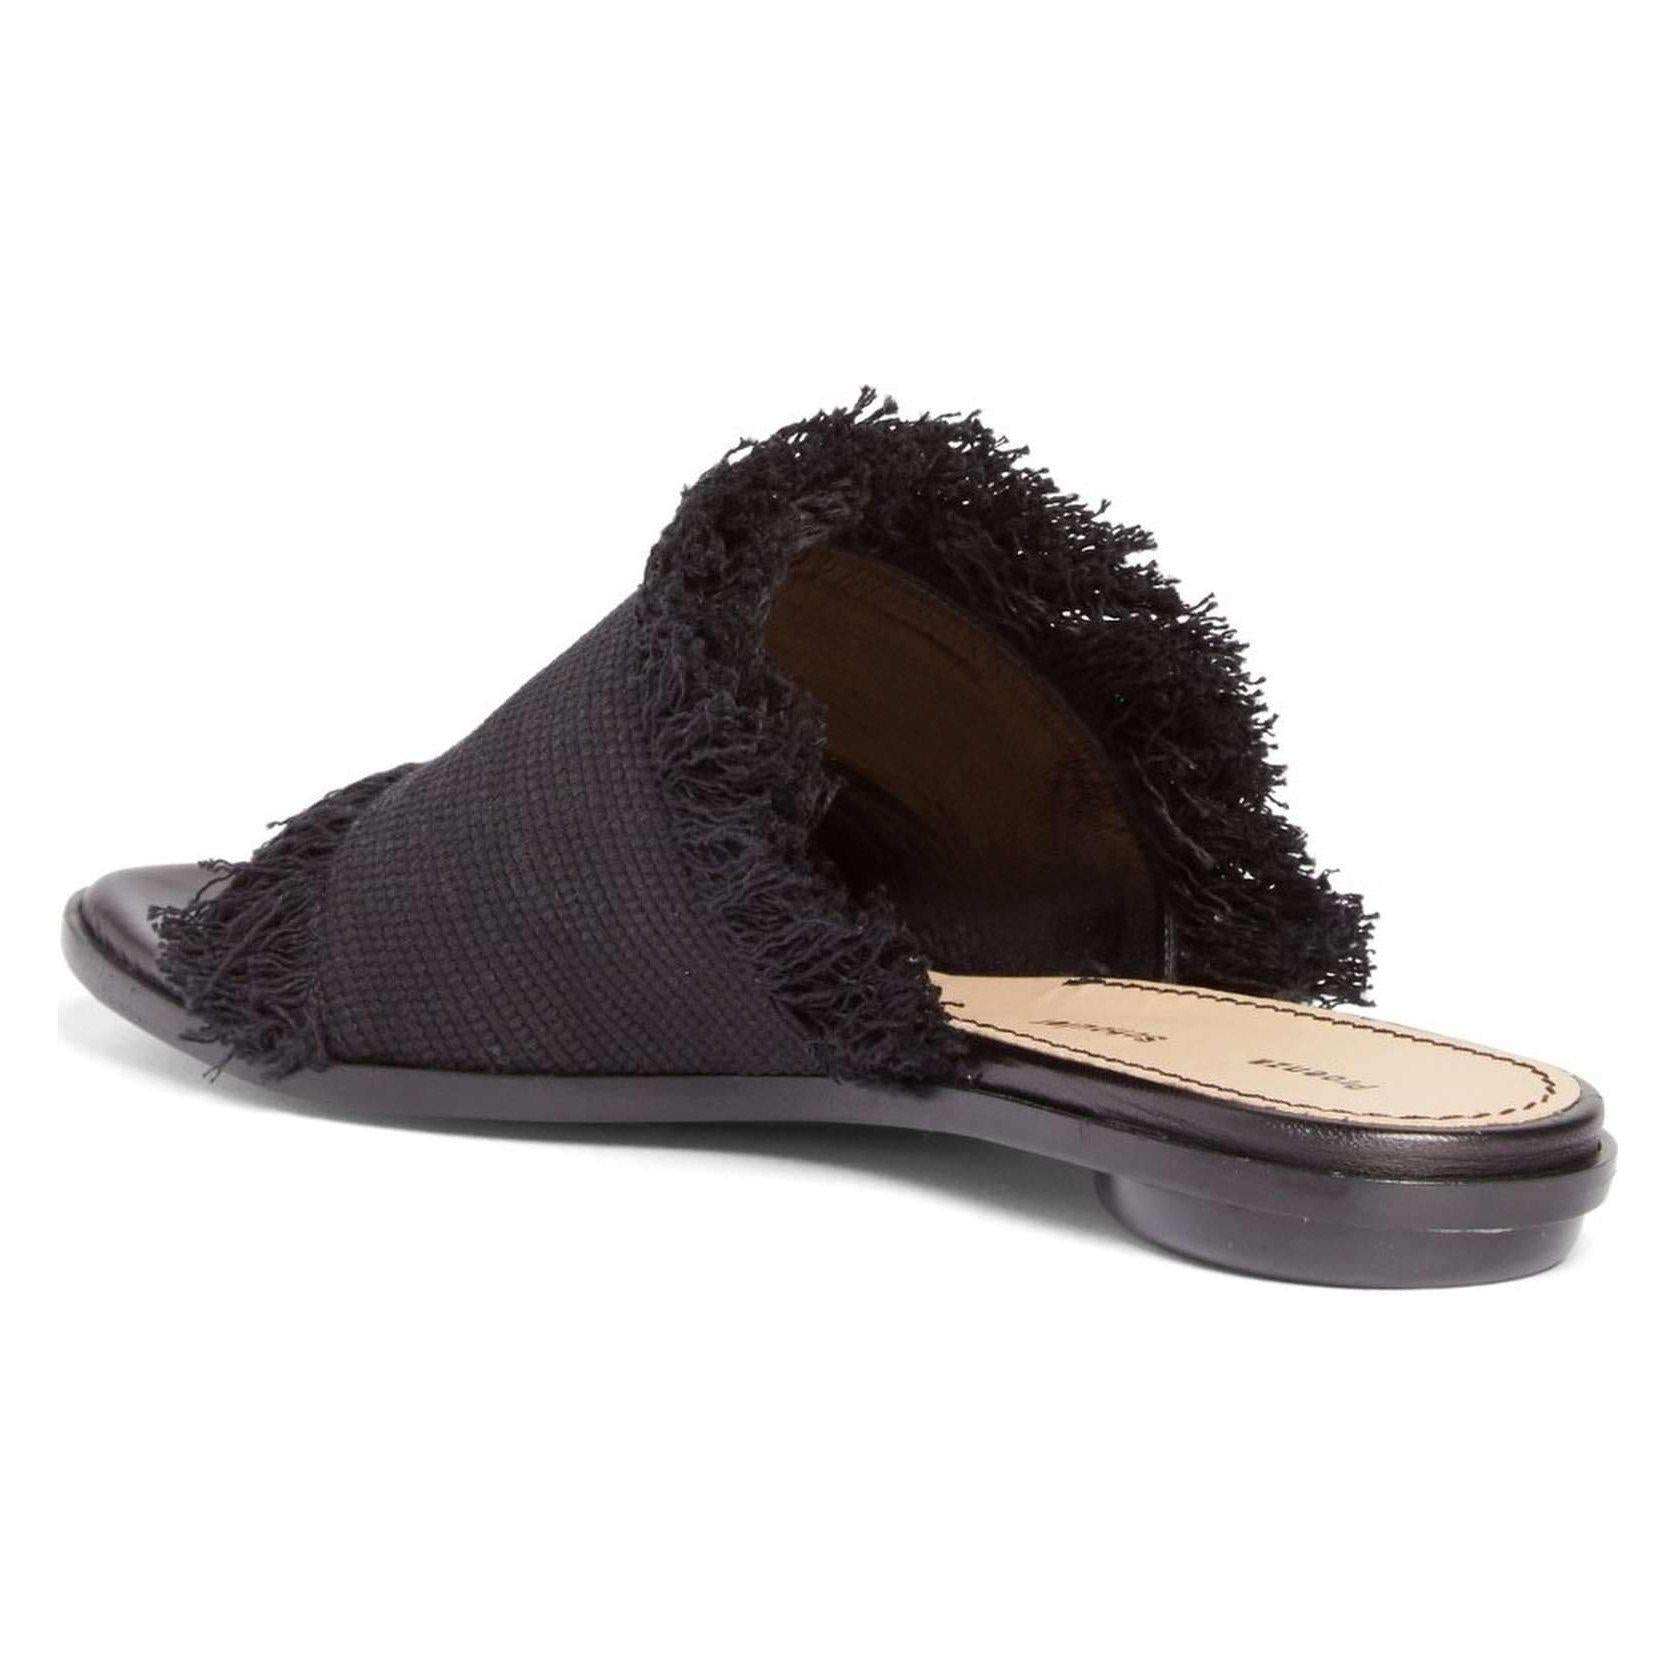 Proenza Schouler PS28010 Nero Women's Flat Shoes-Shoes-Proenza Schouler-7-ShoeShock